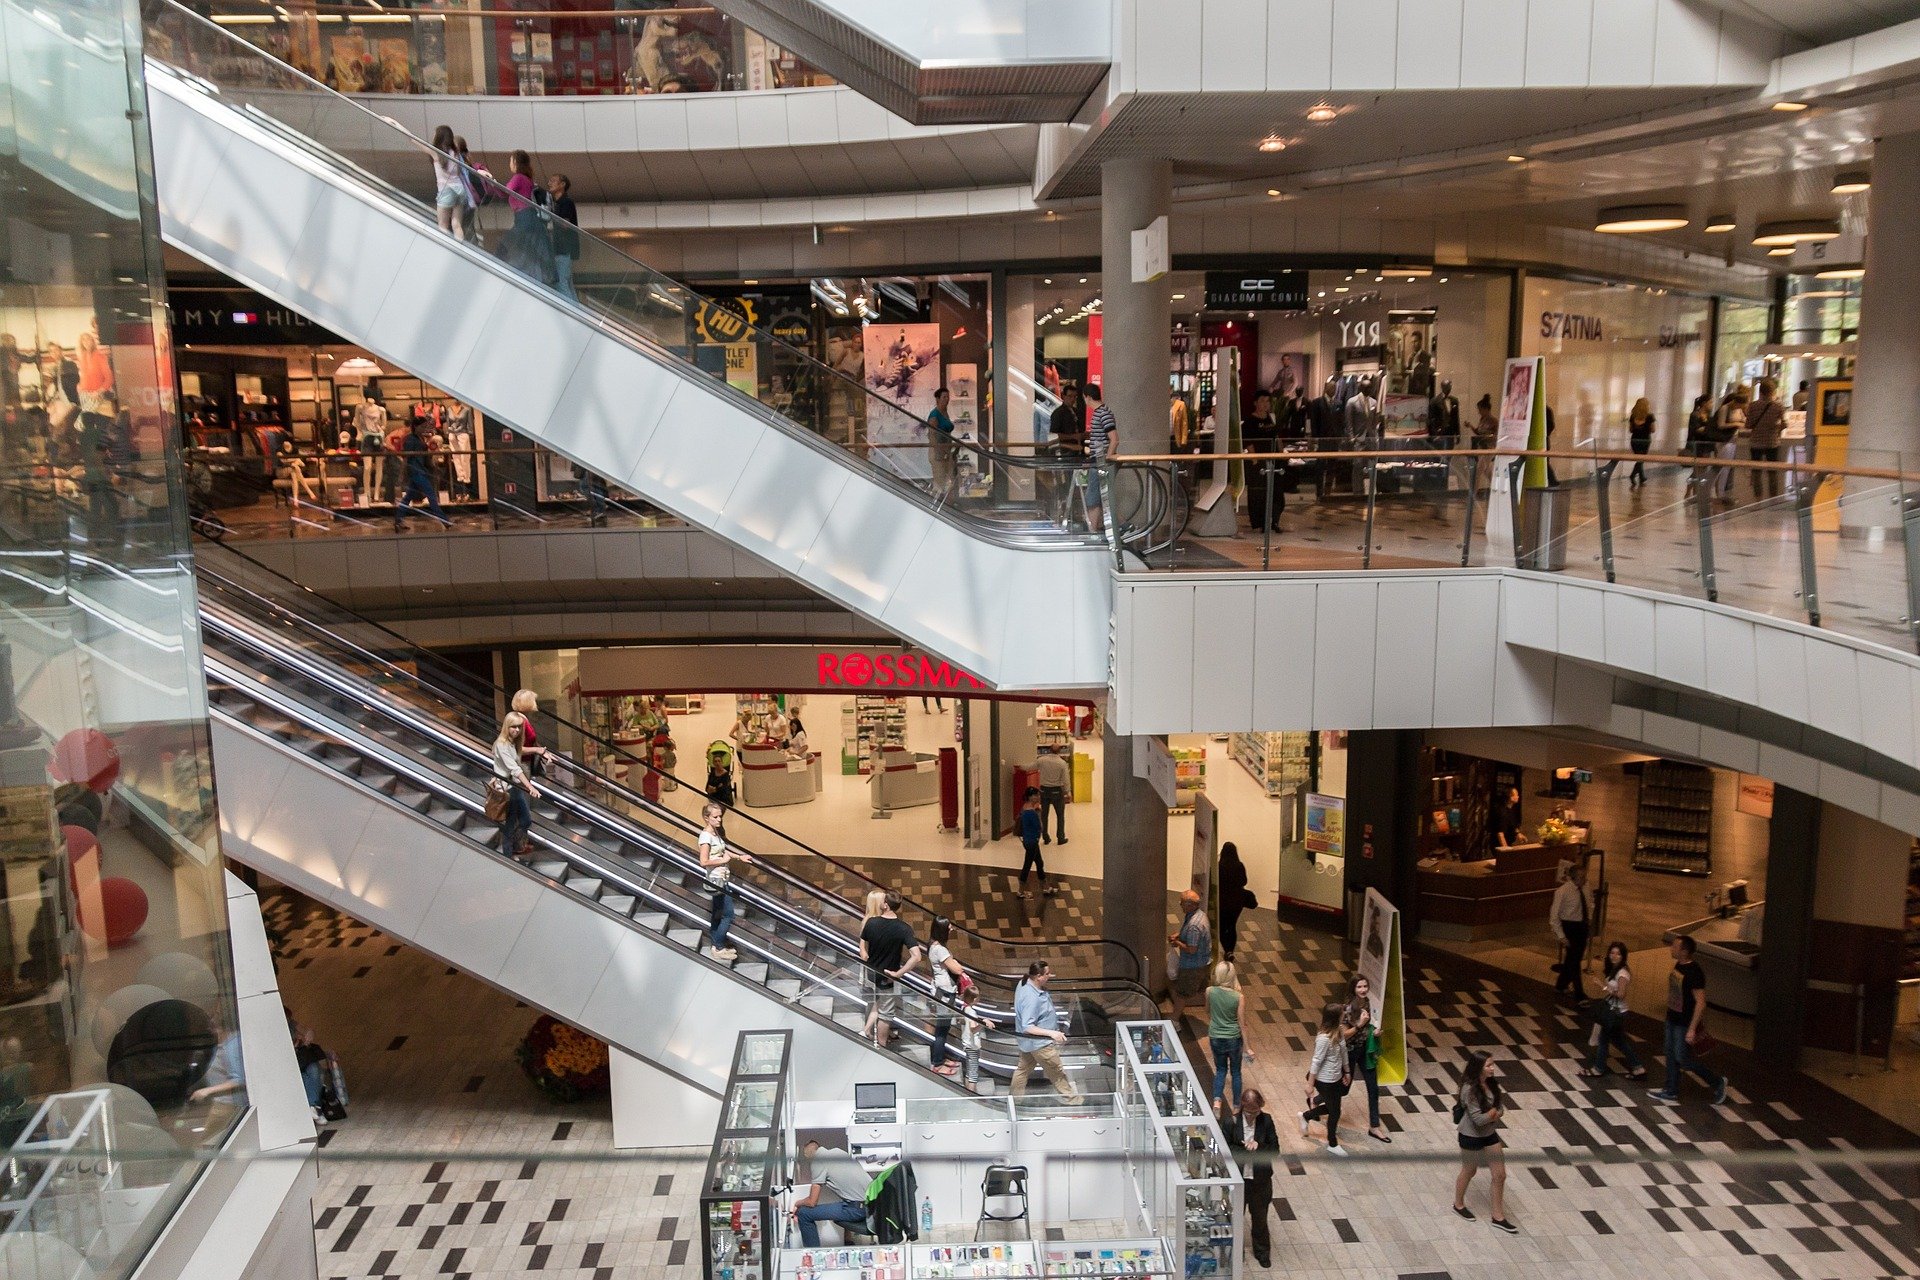 Fundos imobiliários aceleram onda de consolidação de shoppings - Estadão